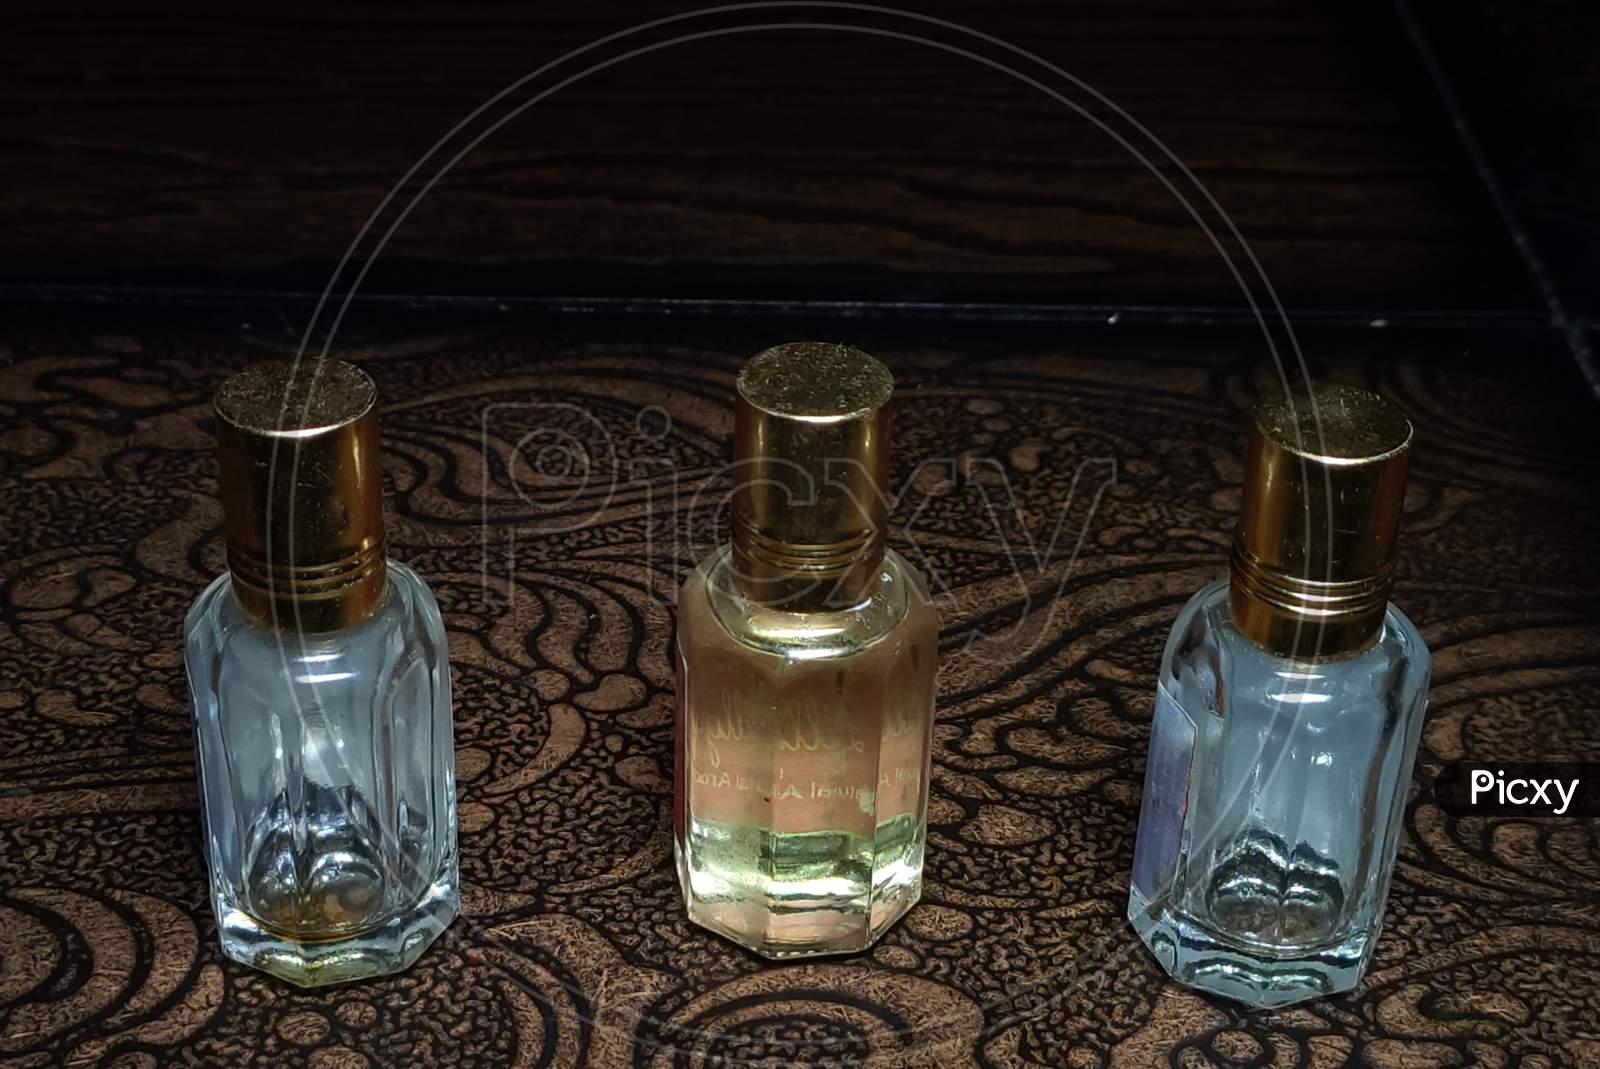 Perfume bottle set of 3 bottles